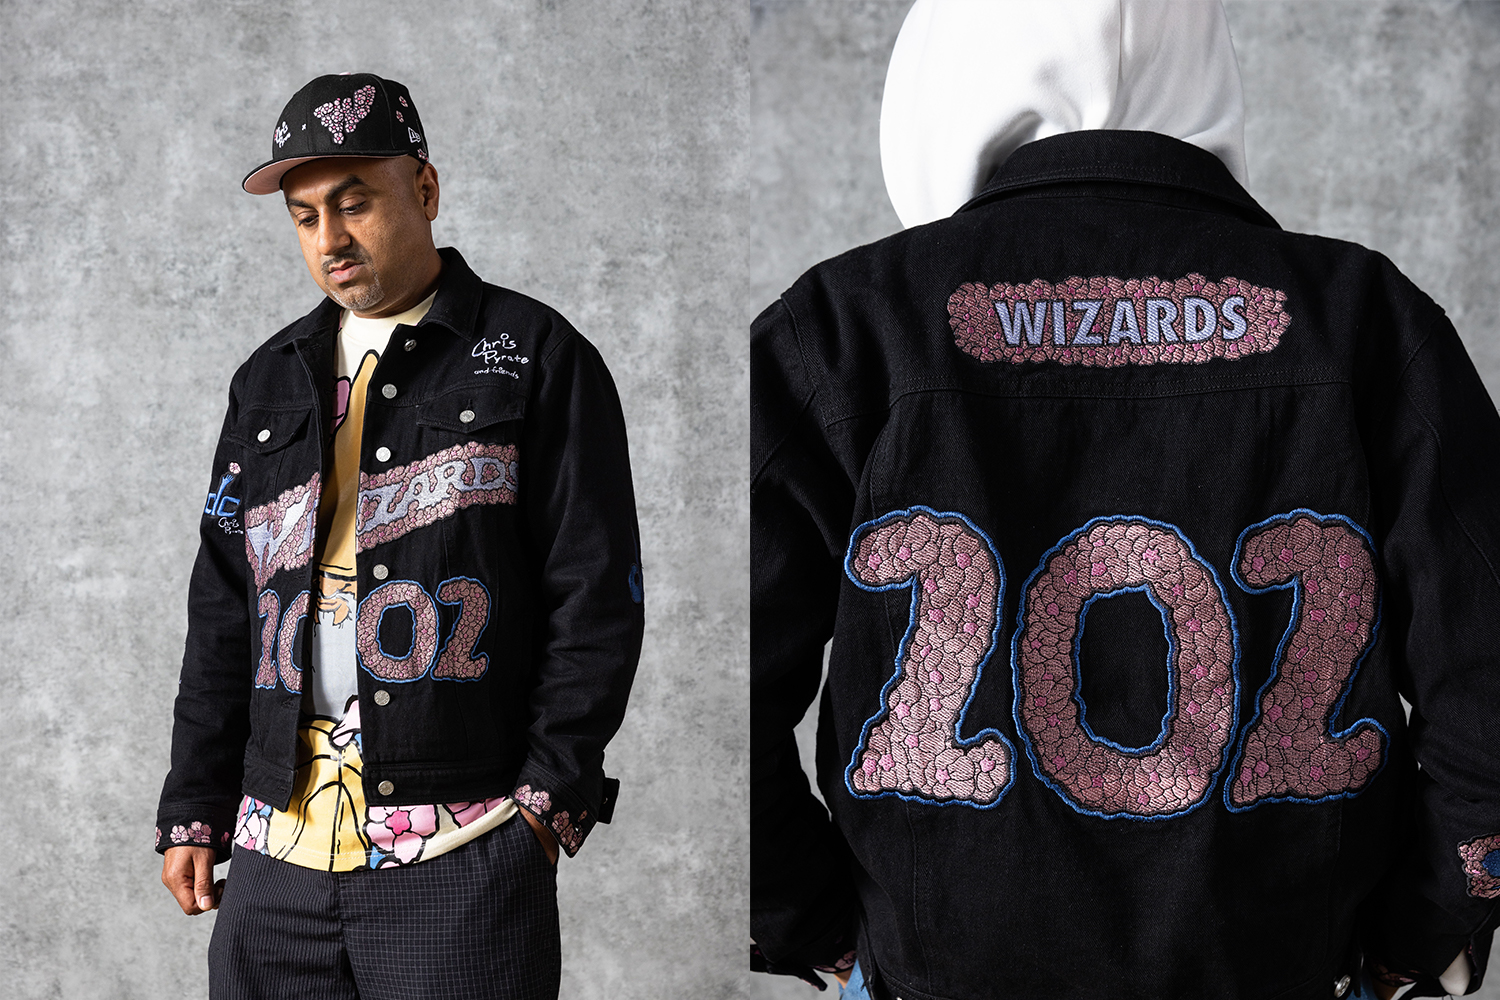 Celebrating 25 years of the Washington Wizards